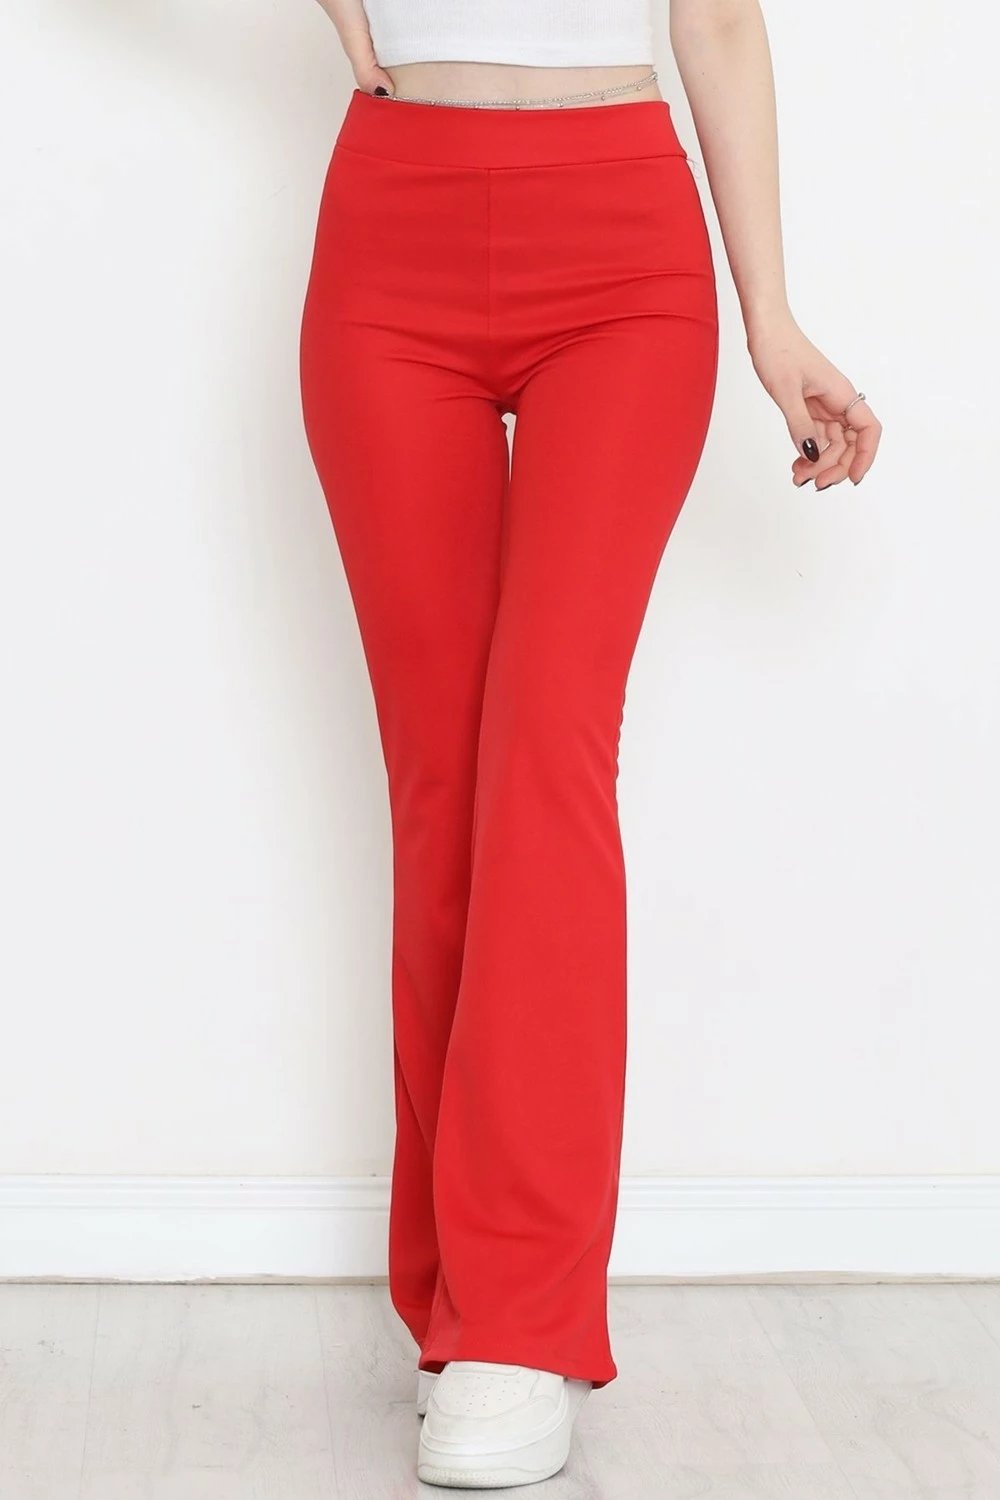 Pantallona të gjera Hd Giyim, të kuqe